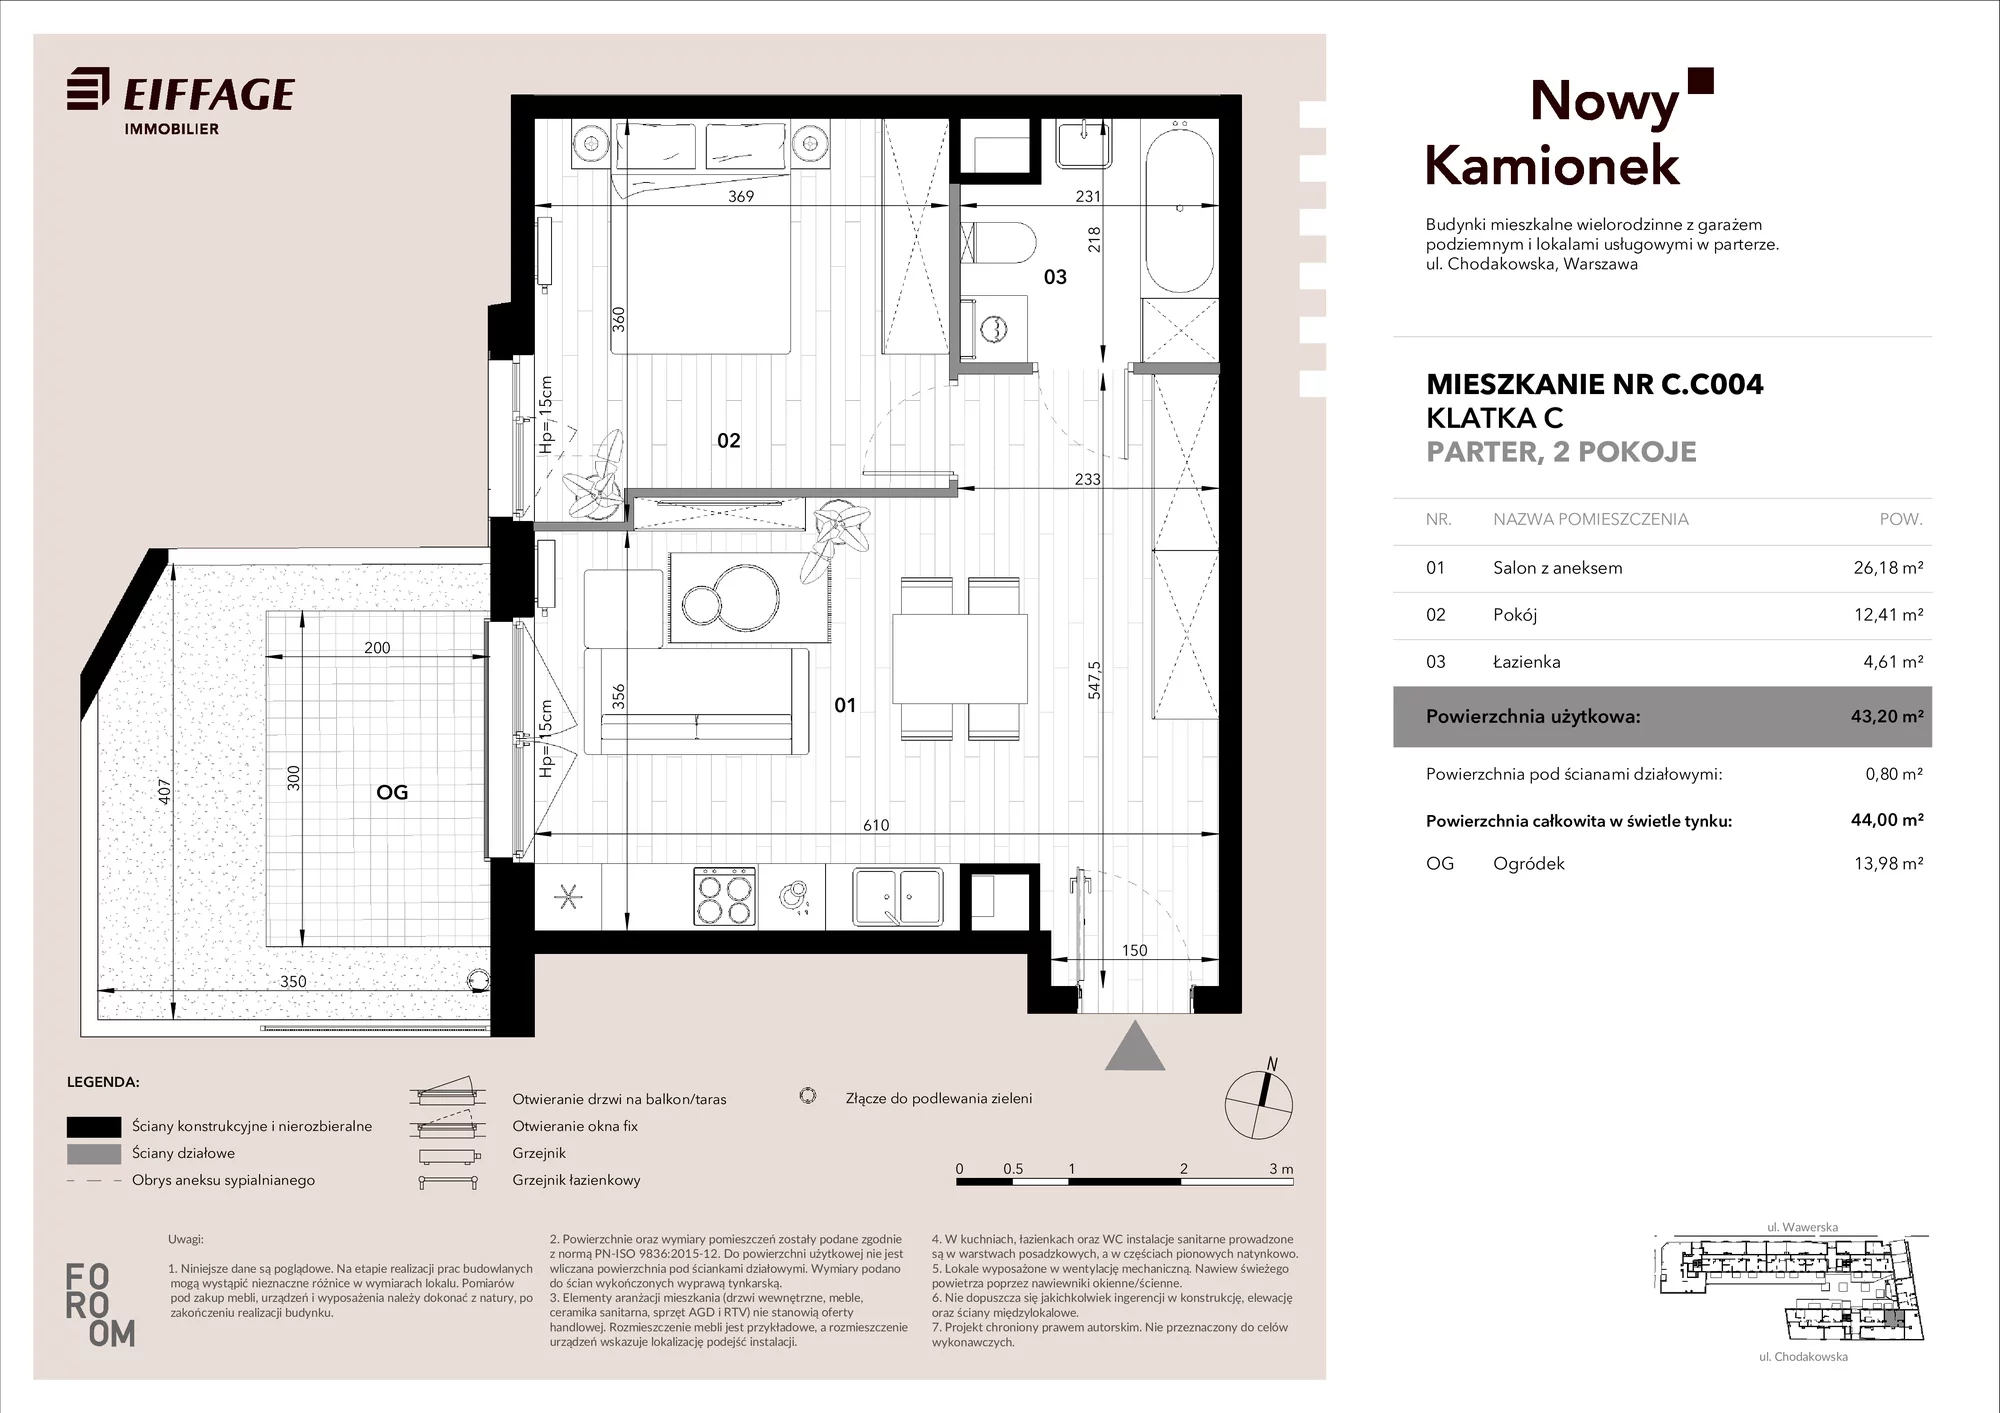 Mieszkanie 43,20 m², parter, oferta nr C.C004, Nowy Kamionek, Warszawa, Praga Południe, Kamionek, ul. Chodakowska